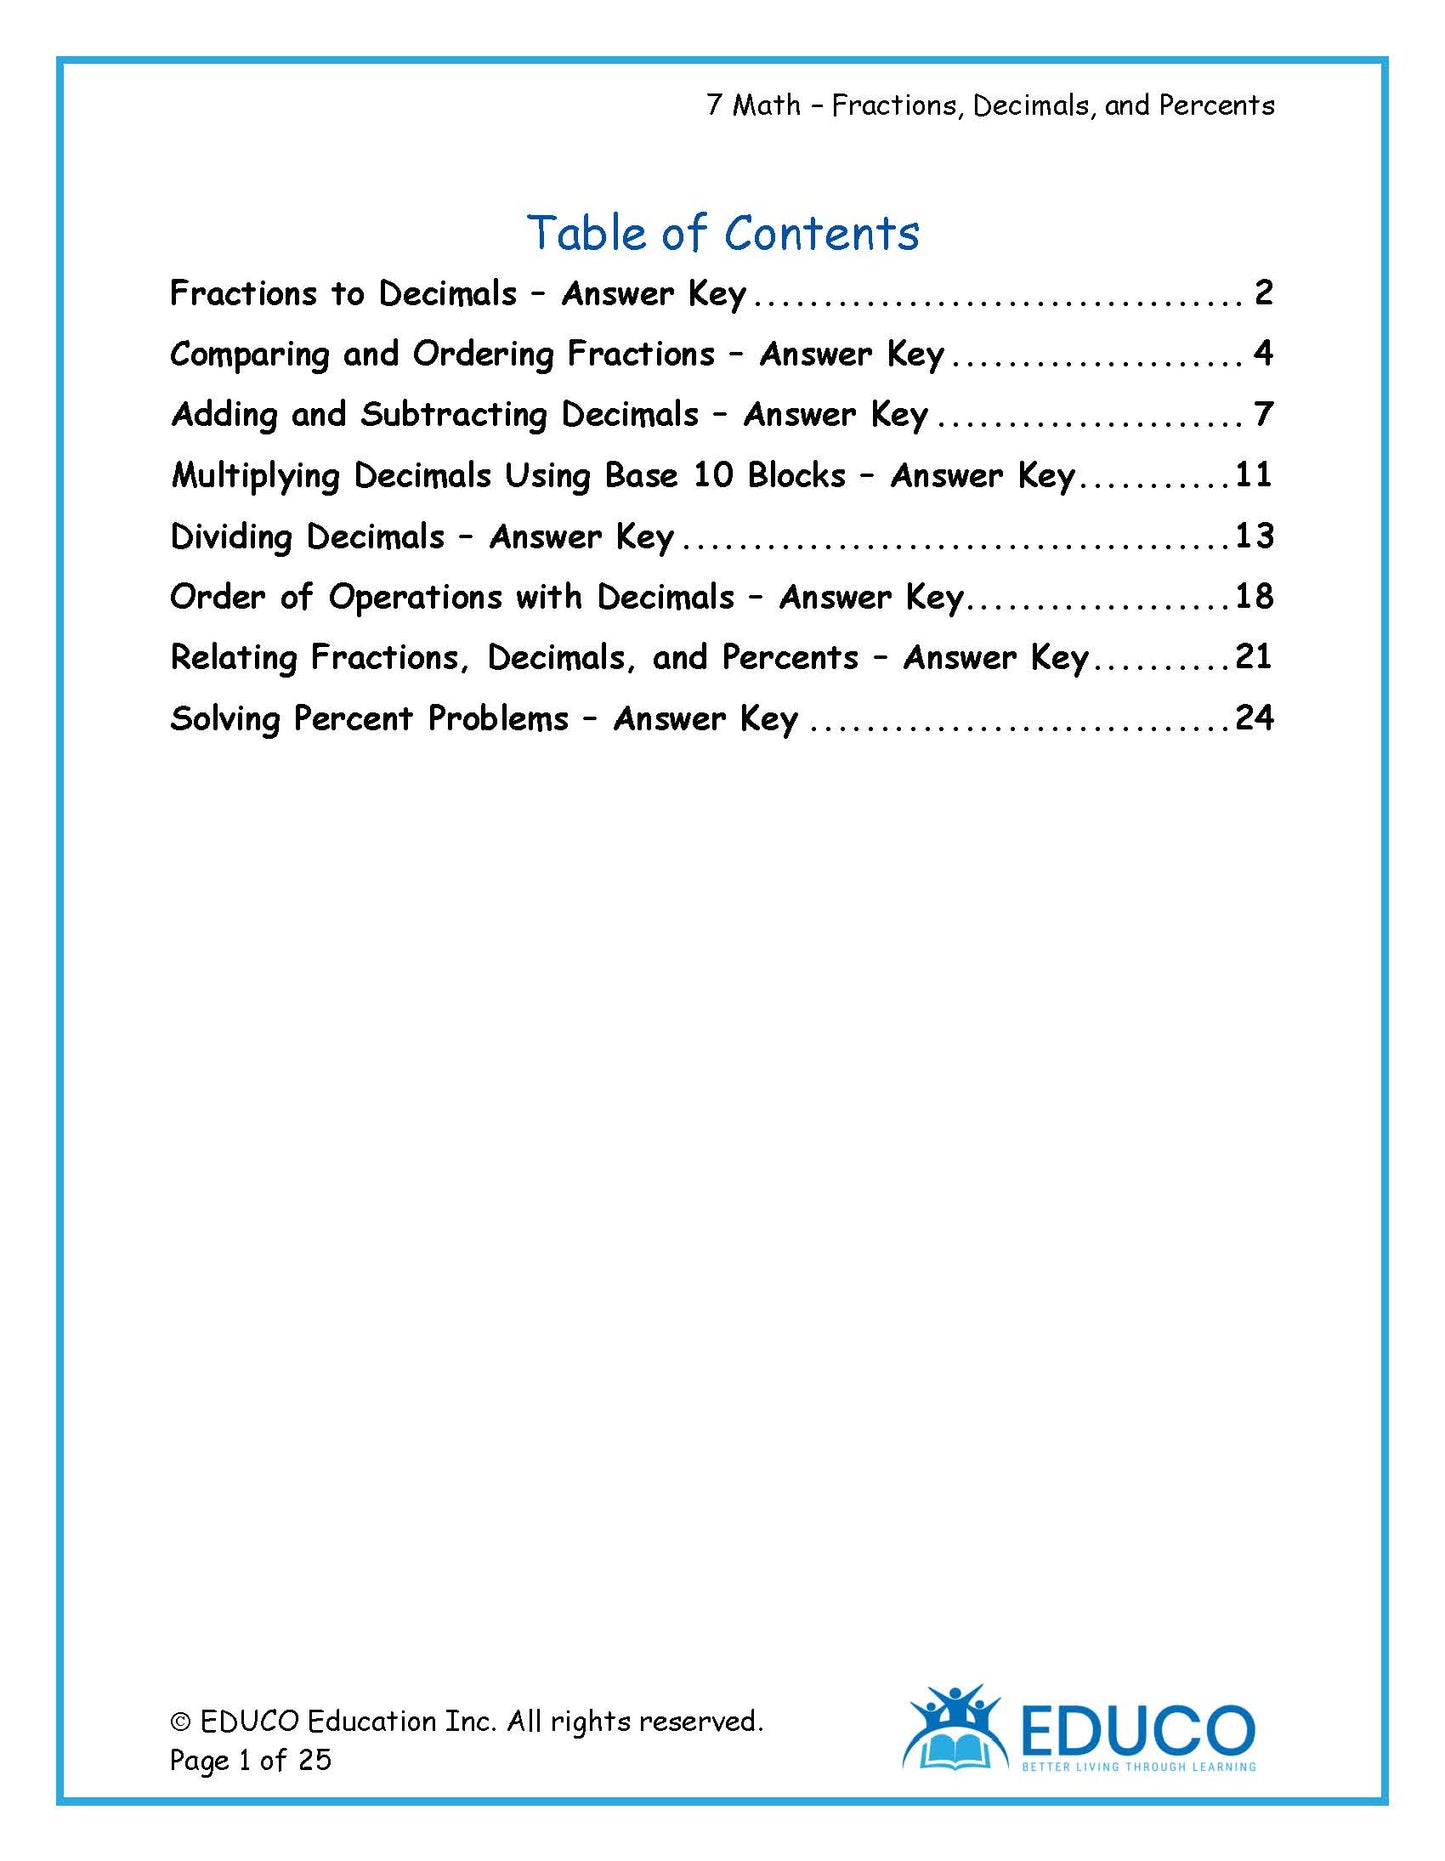 Unit 3: Fractions, Decimals, and Percents - Grade 7 Math (Digital Download)